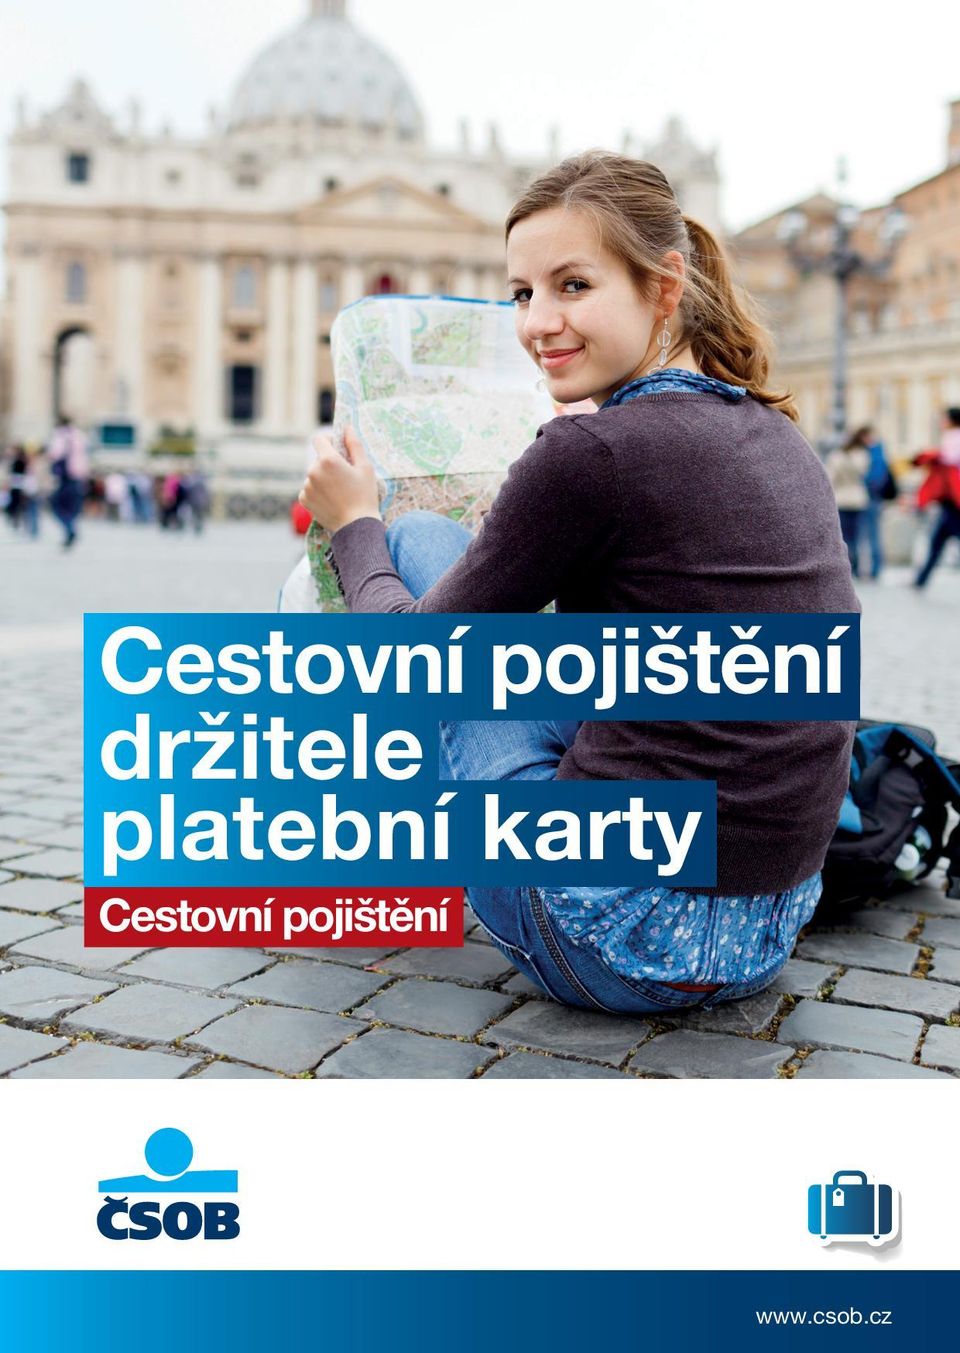 karty  www.csob.cz